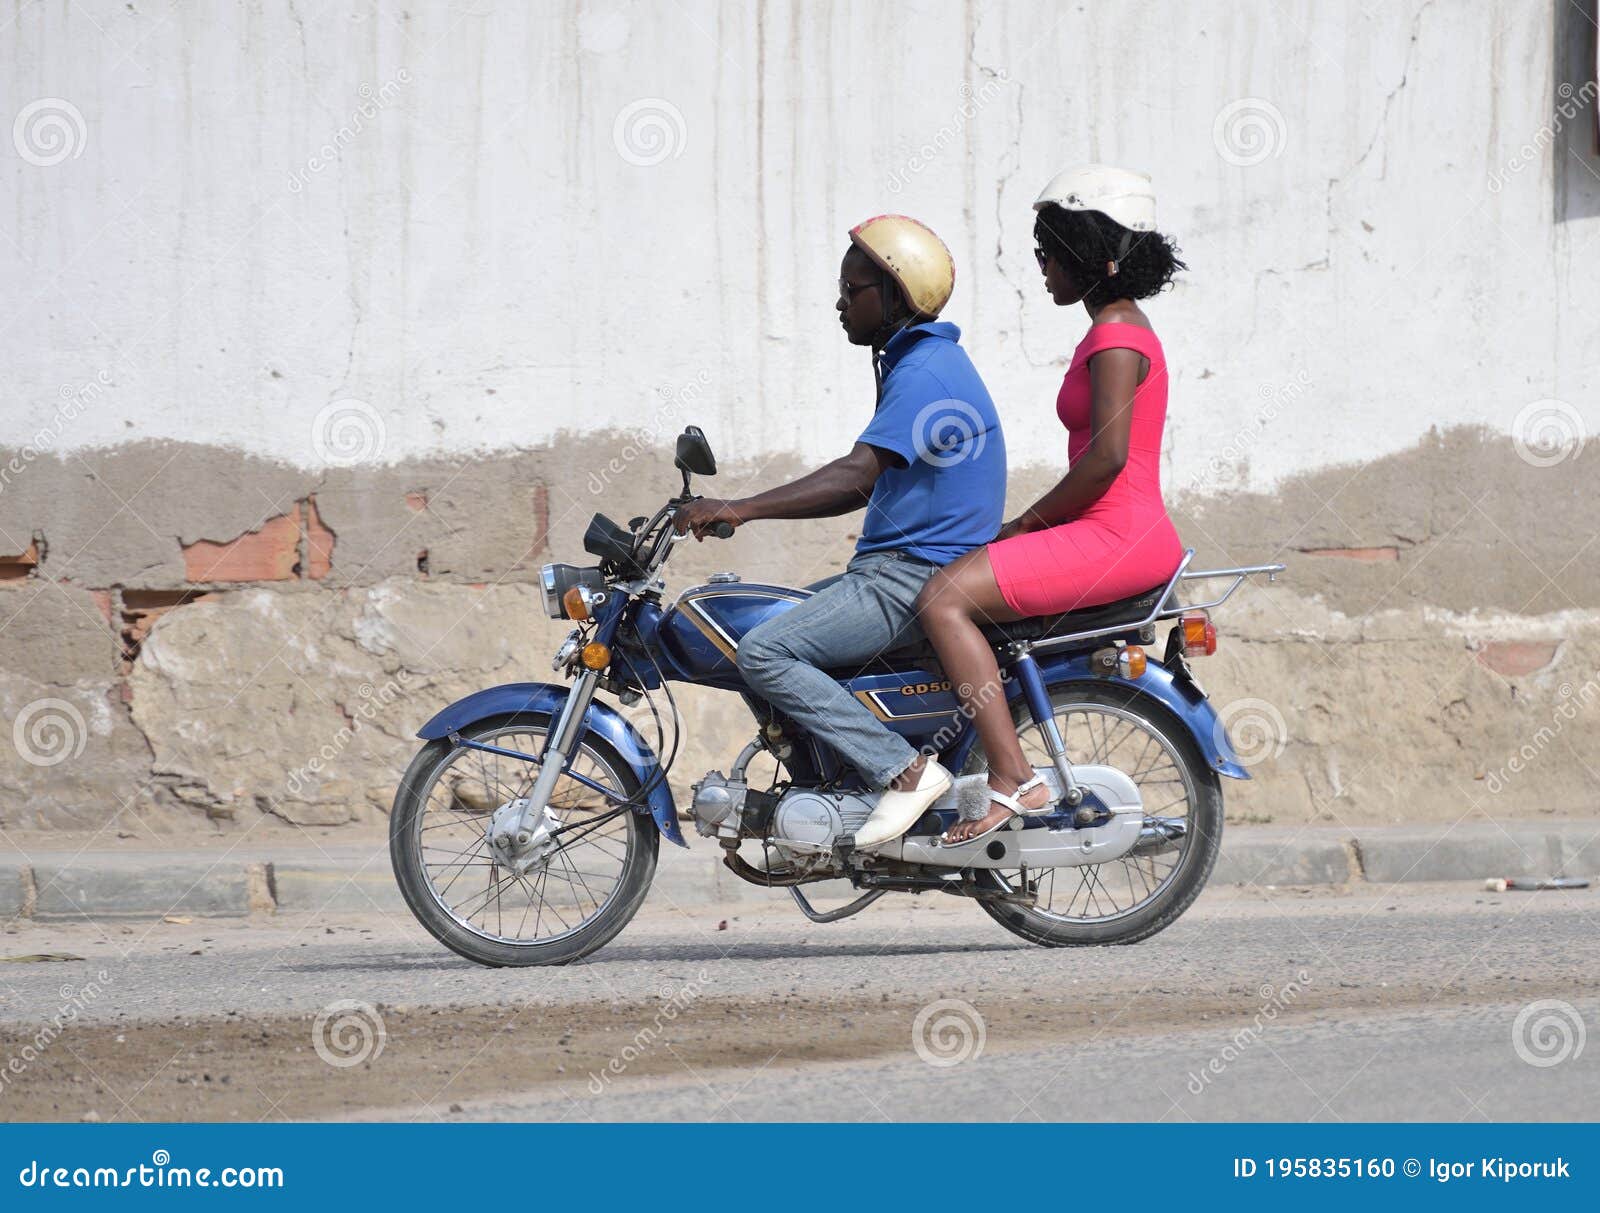 moto afrique